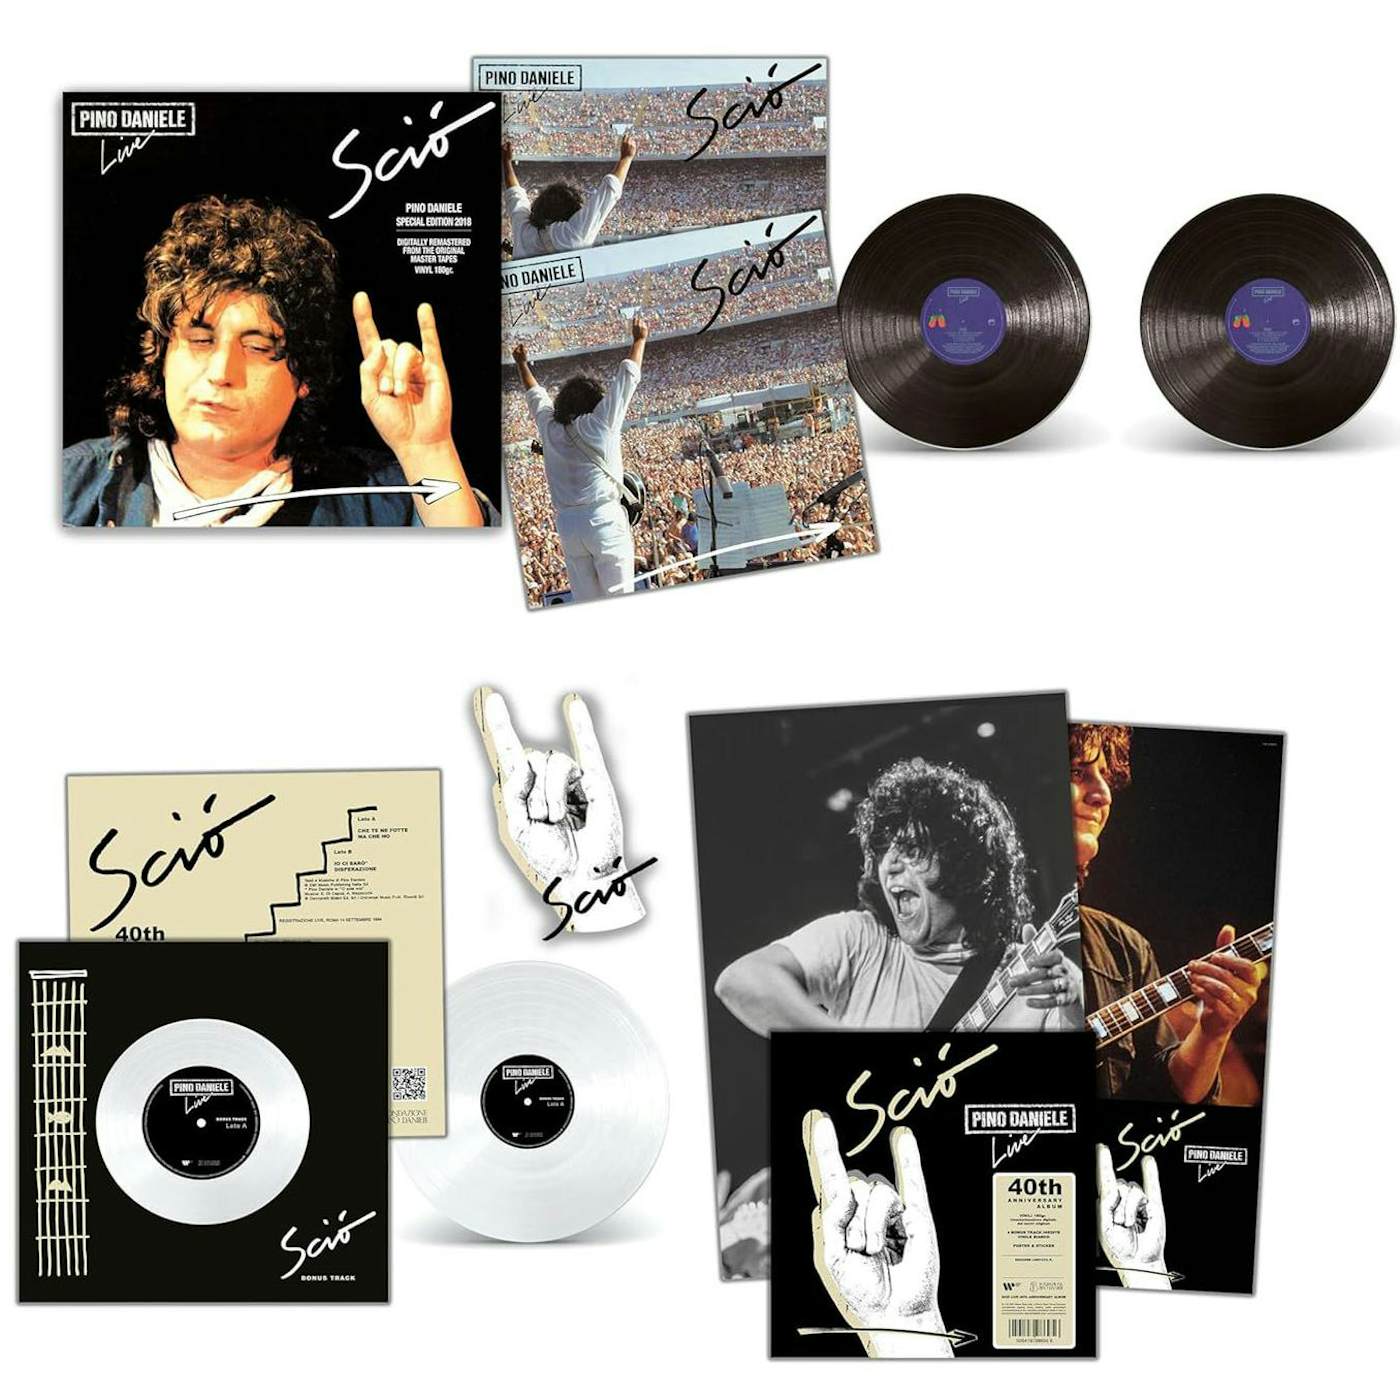 Pino Daniele Scio Live: 40th Anniversary Album Vinyl Record